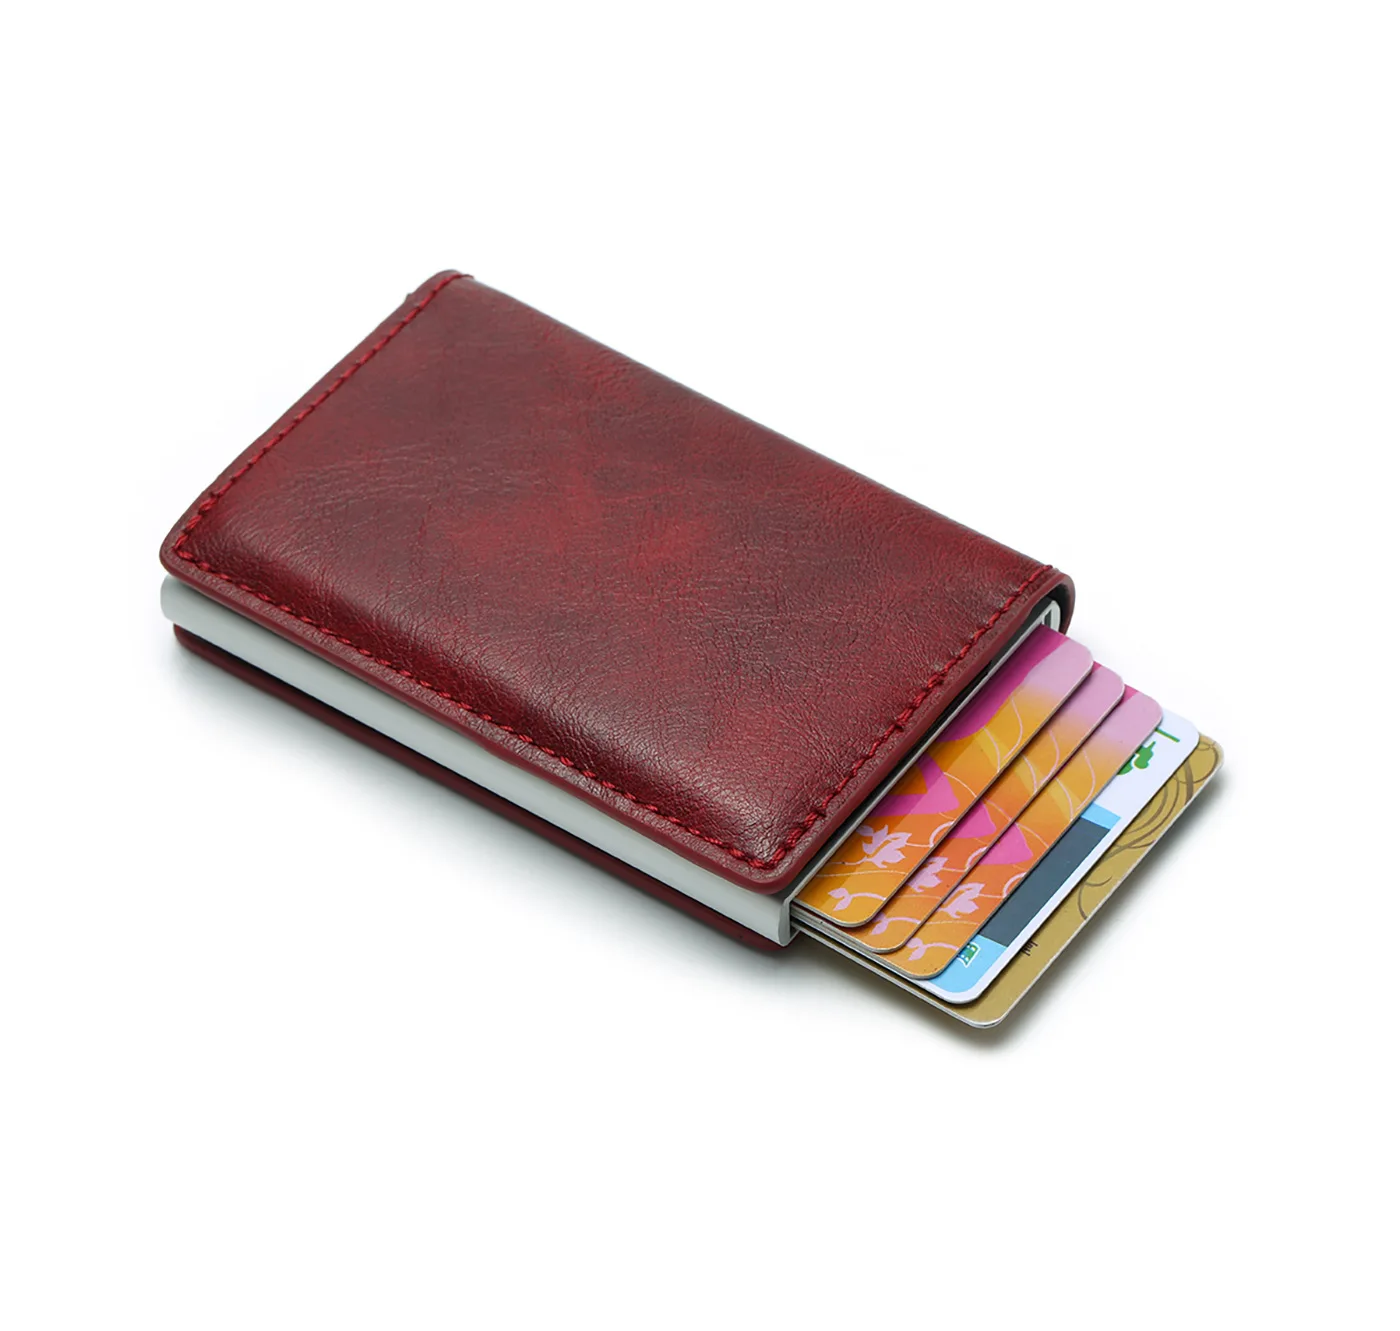 BISI GORO унисекс кошелек компактная алюминиевая металлическая тонкая бумажник для визиток мужской держатель для кредитных карт Блокировка Rfid кошелек MoneyClips